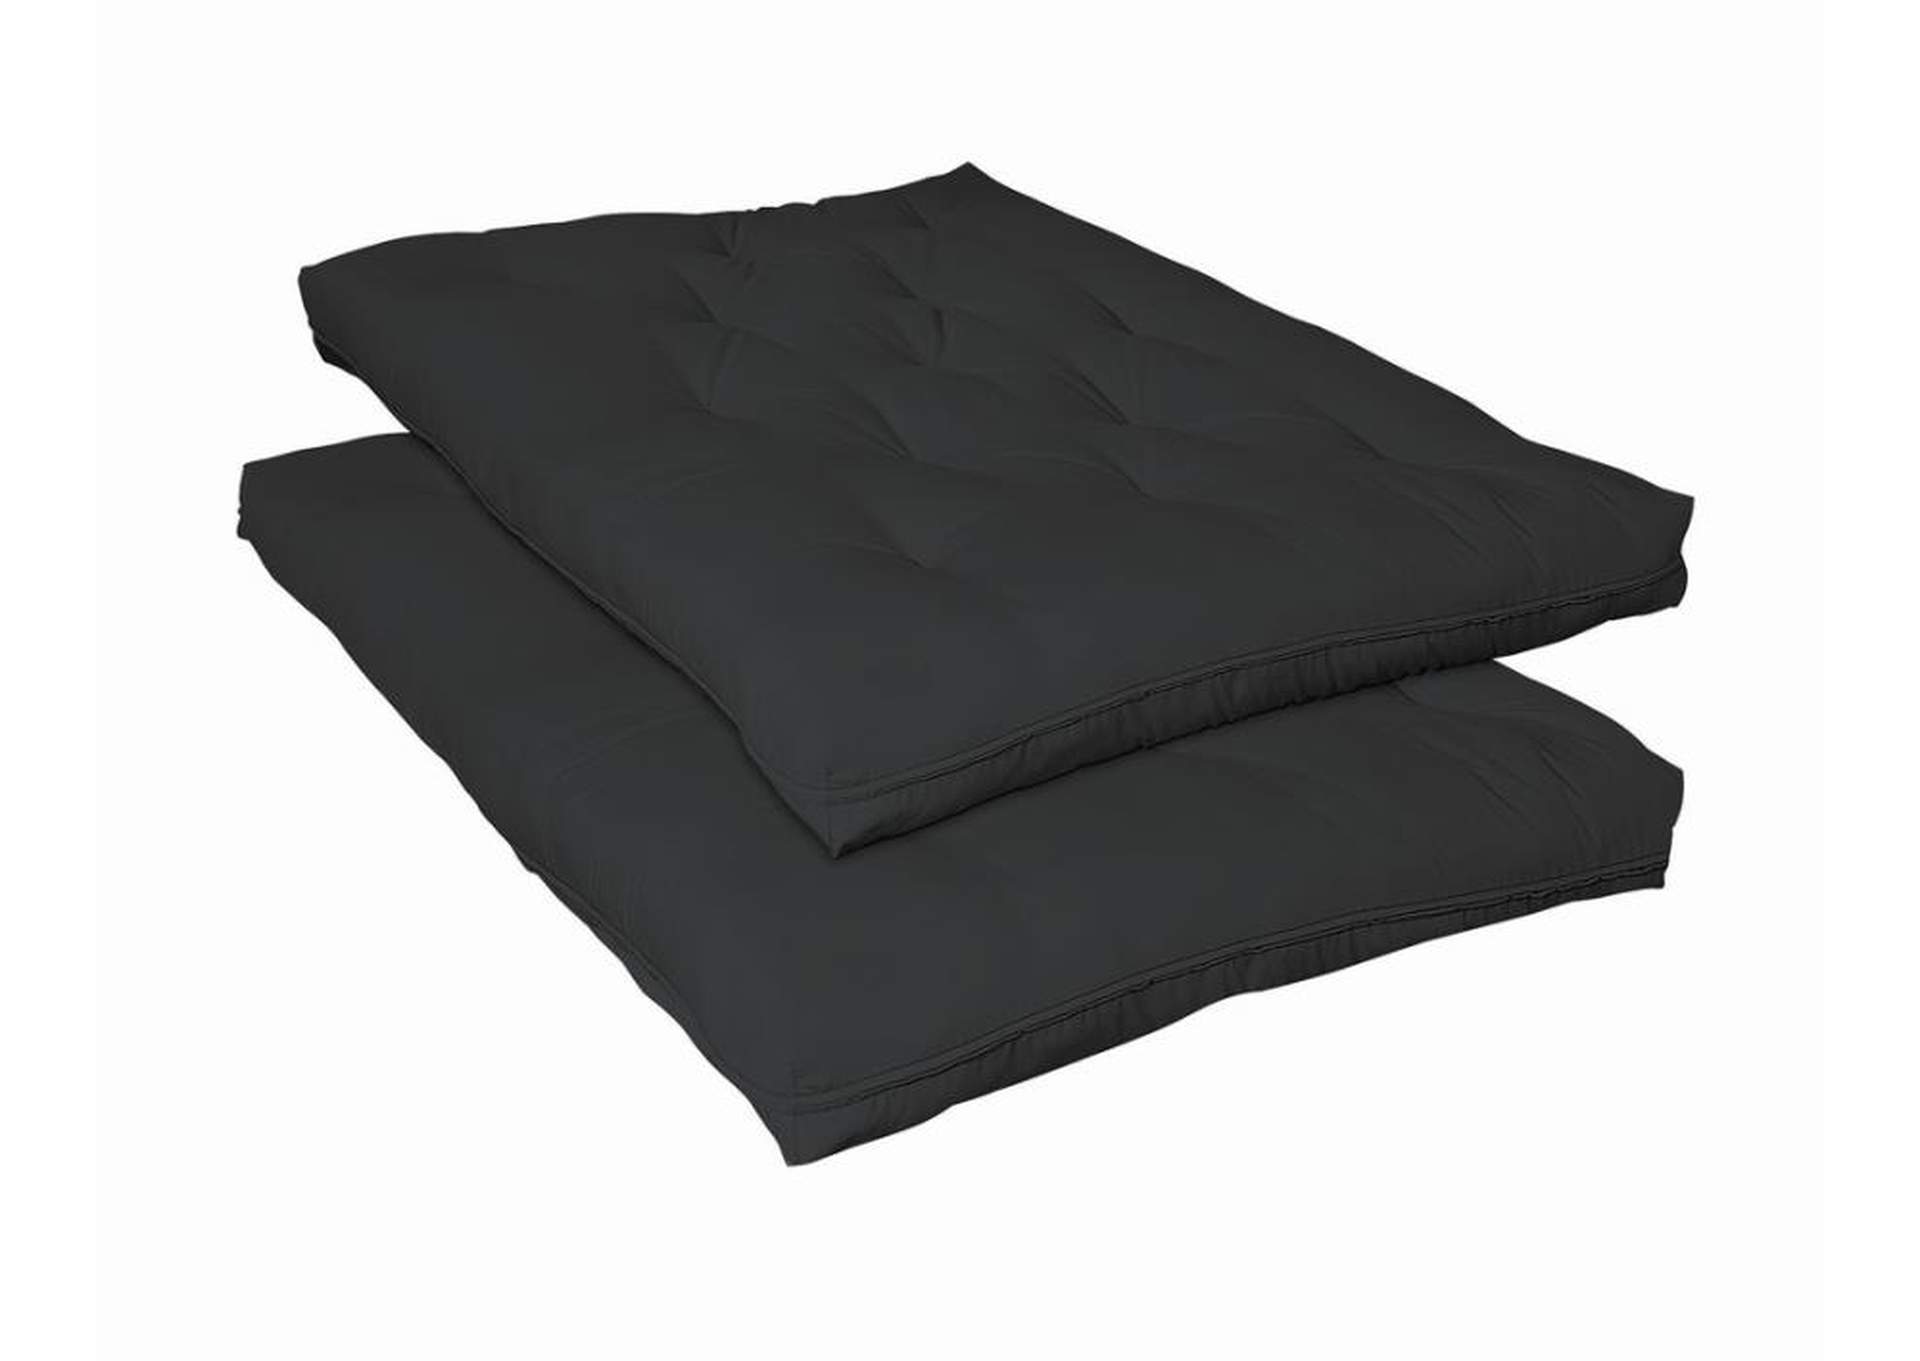 8" Premium Futon Pad Black,Coaster Furniture